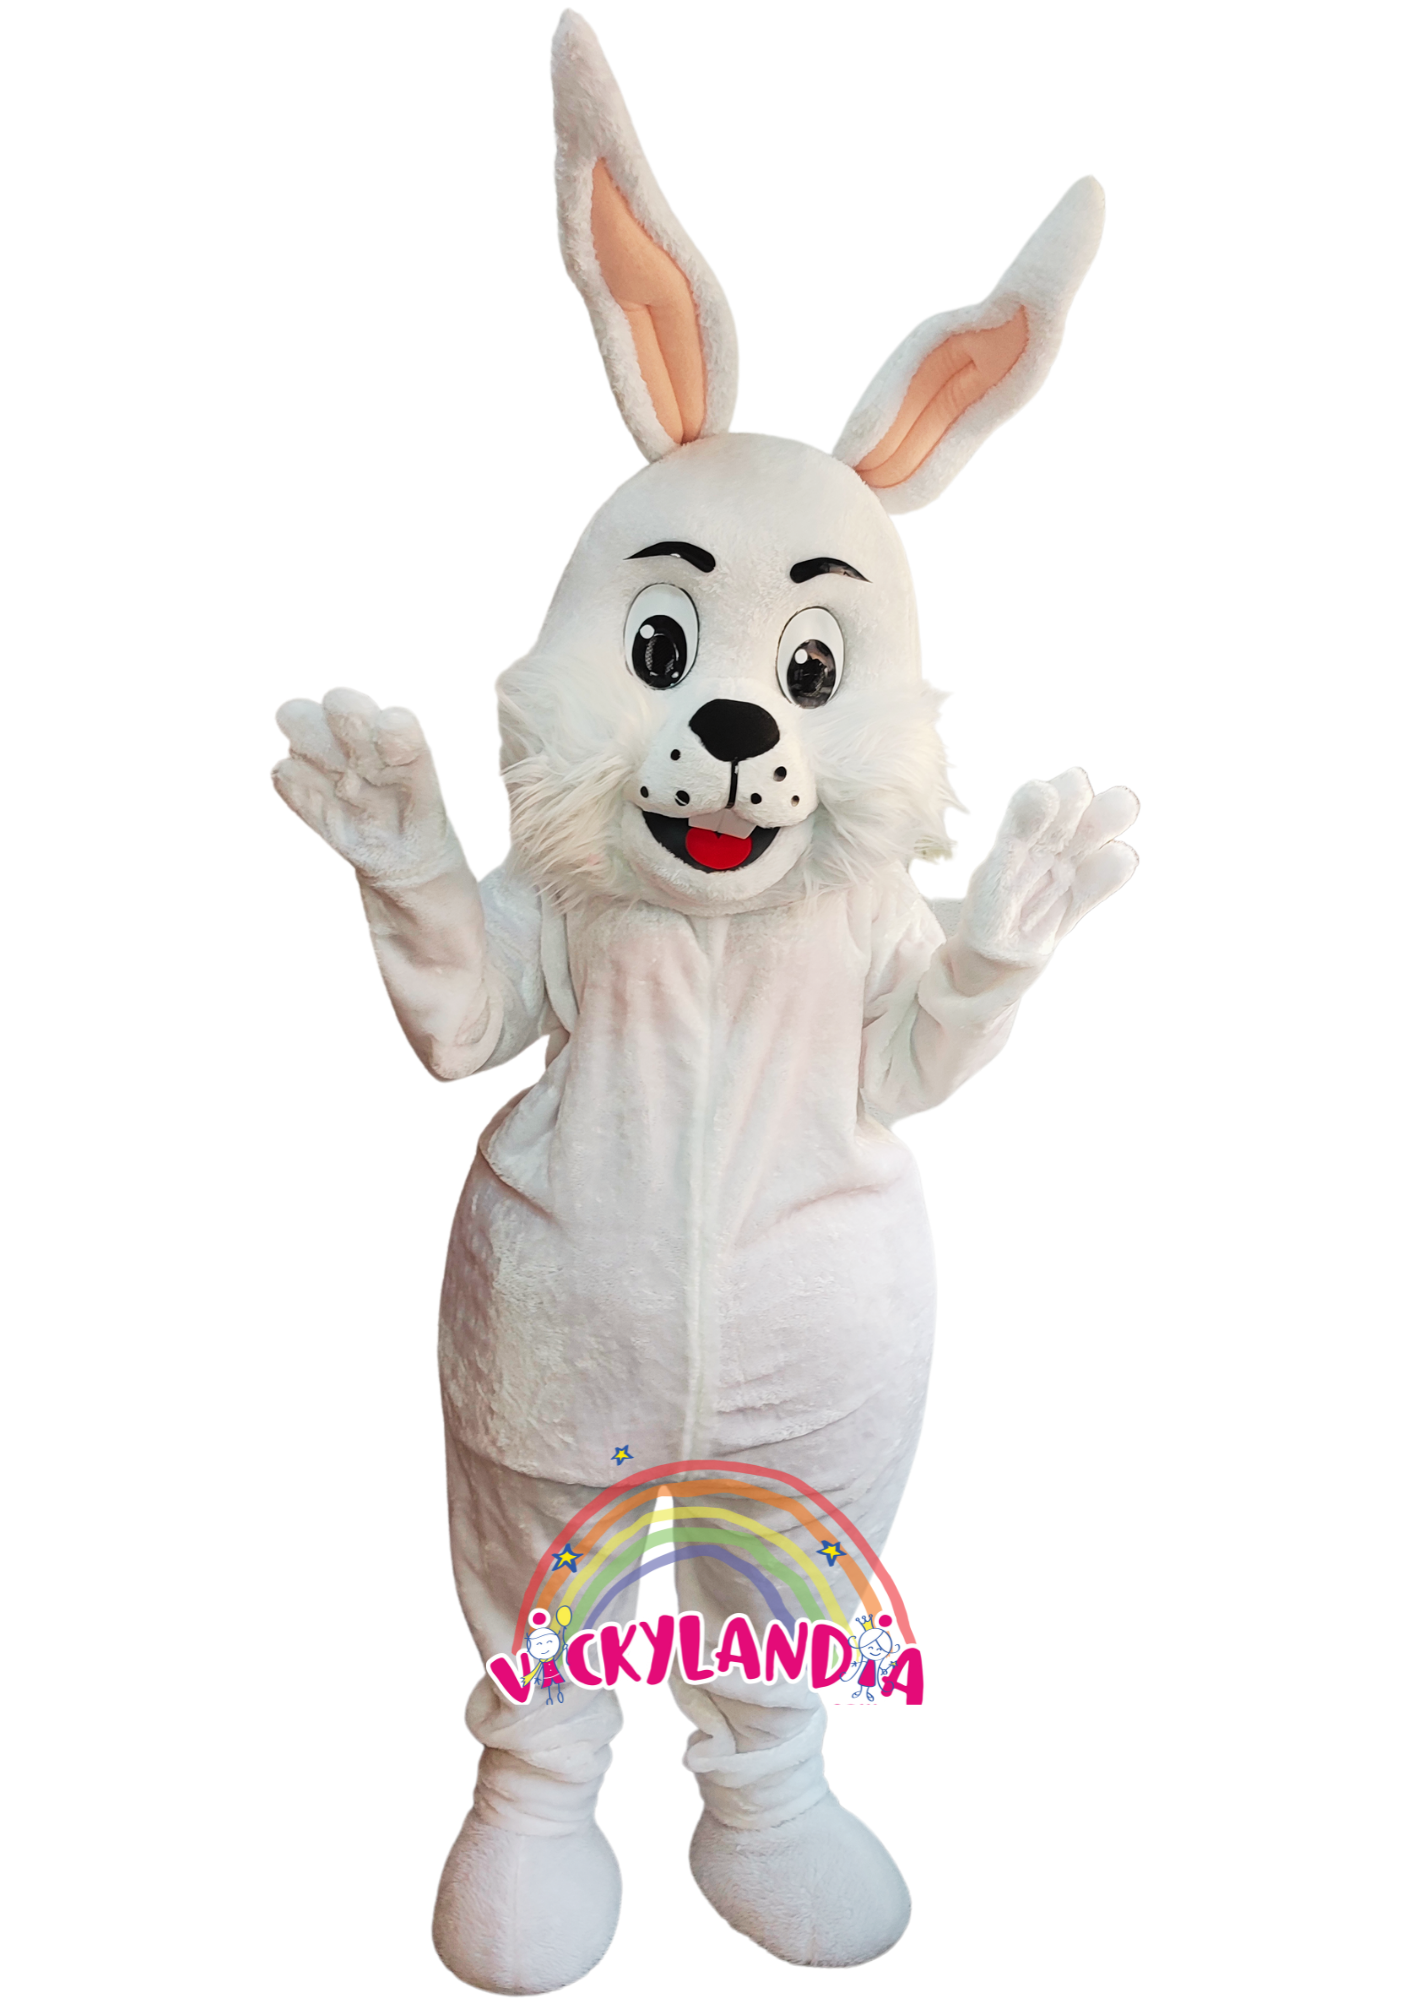 Descubre la magia de nuestro muñeco publicitario de Conejo Blanco en Vickylandia. Son disfraces cabezones perfectos para fiestas infantiles, shows, cumpleaños, estrategias publicitarias, espectáculos, cabalgatas y cualquier tipo de evento.